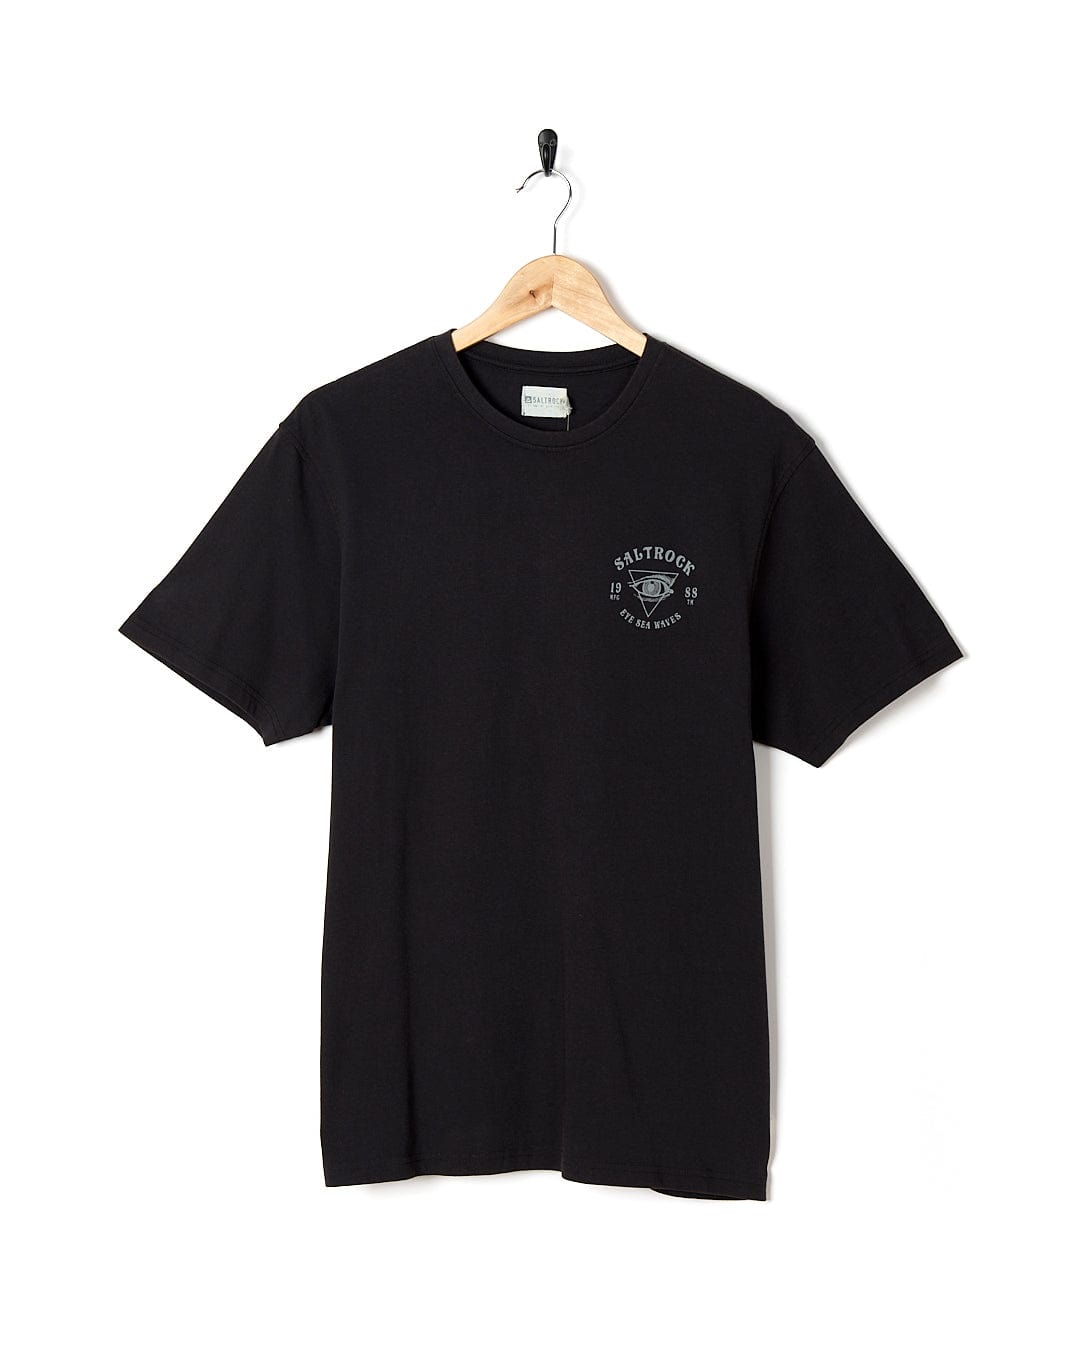 A Saltrock Eye Sea Waves - Mens Short Sleeve Stonewash T-shirt - Dark Grey with a logo on it.